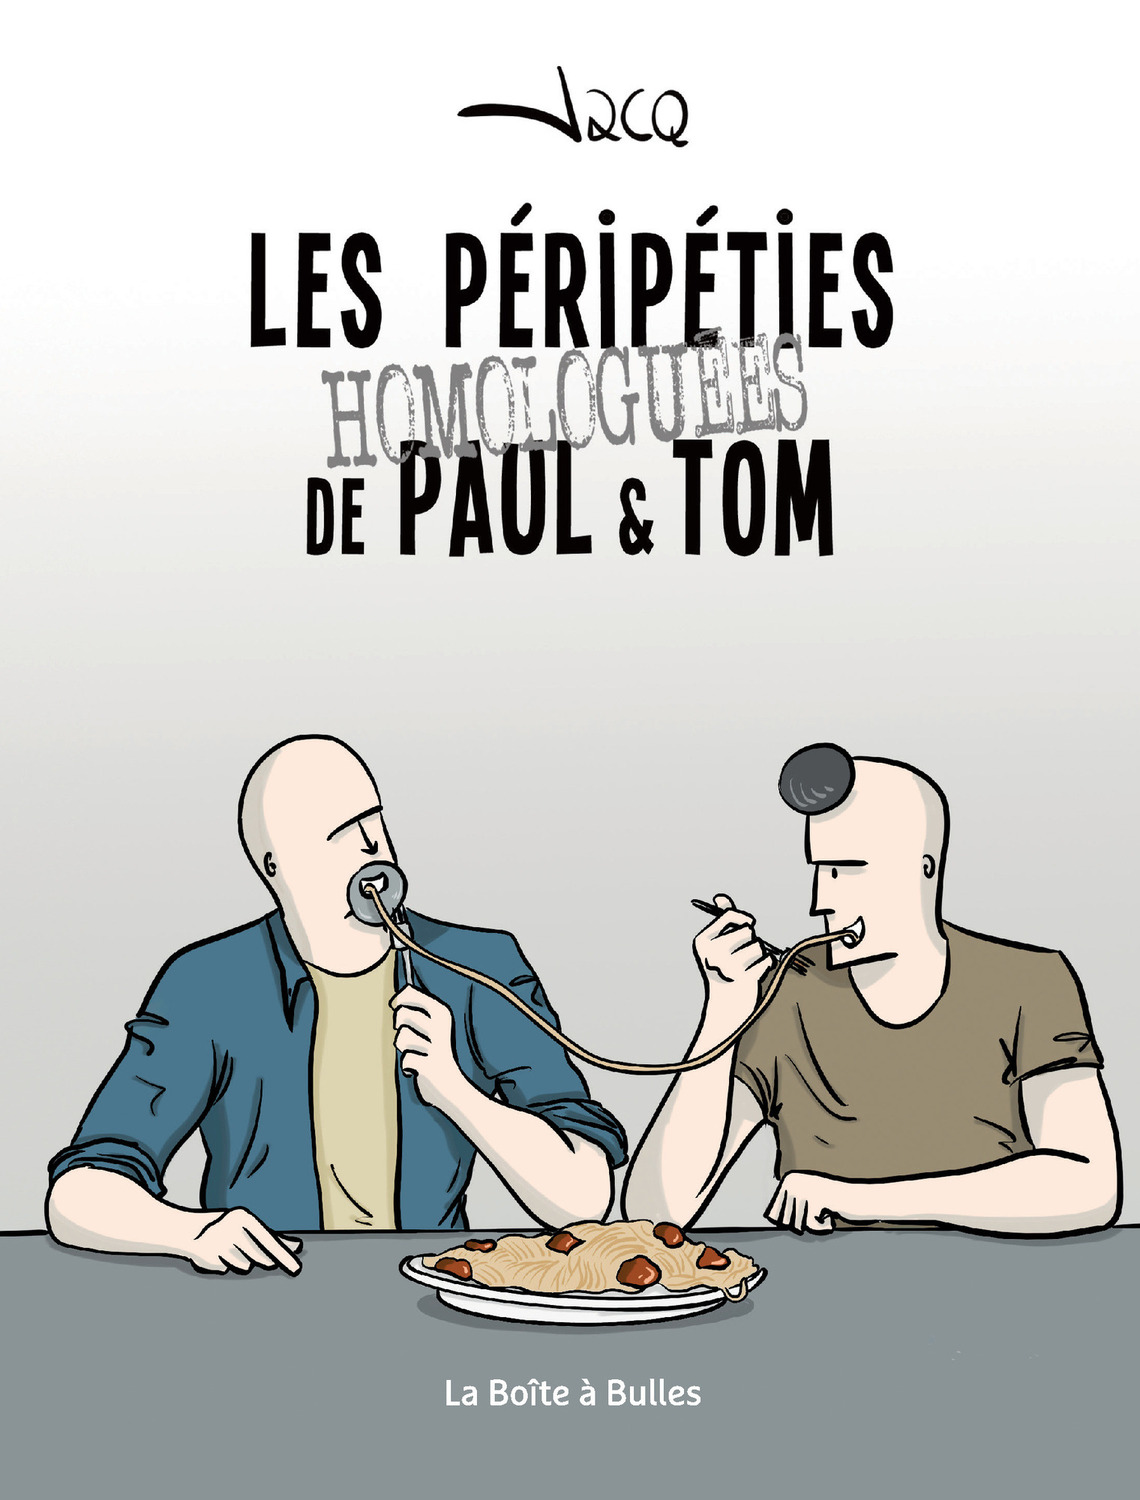 Les Péripéties homologuées de Paul & Tom - Par Jacq - La Boîte à Bulles